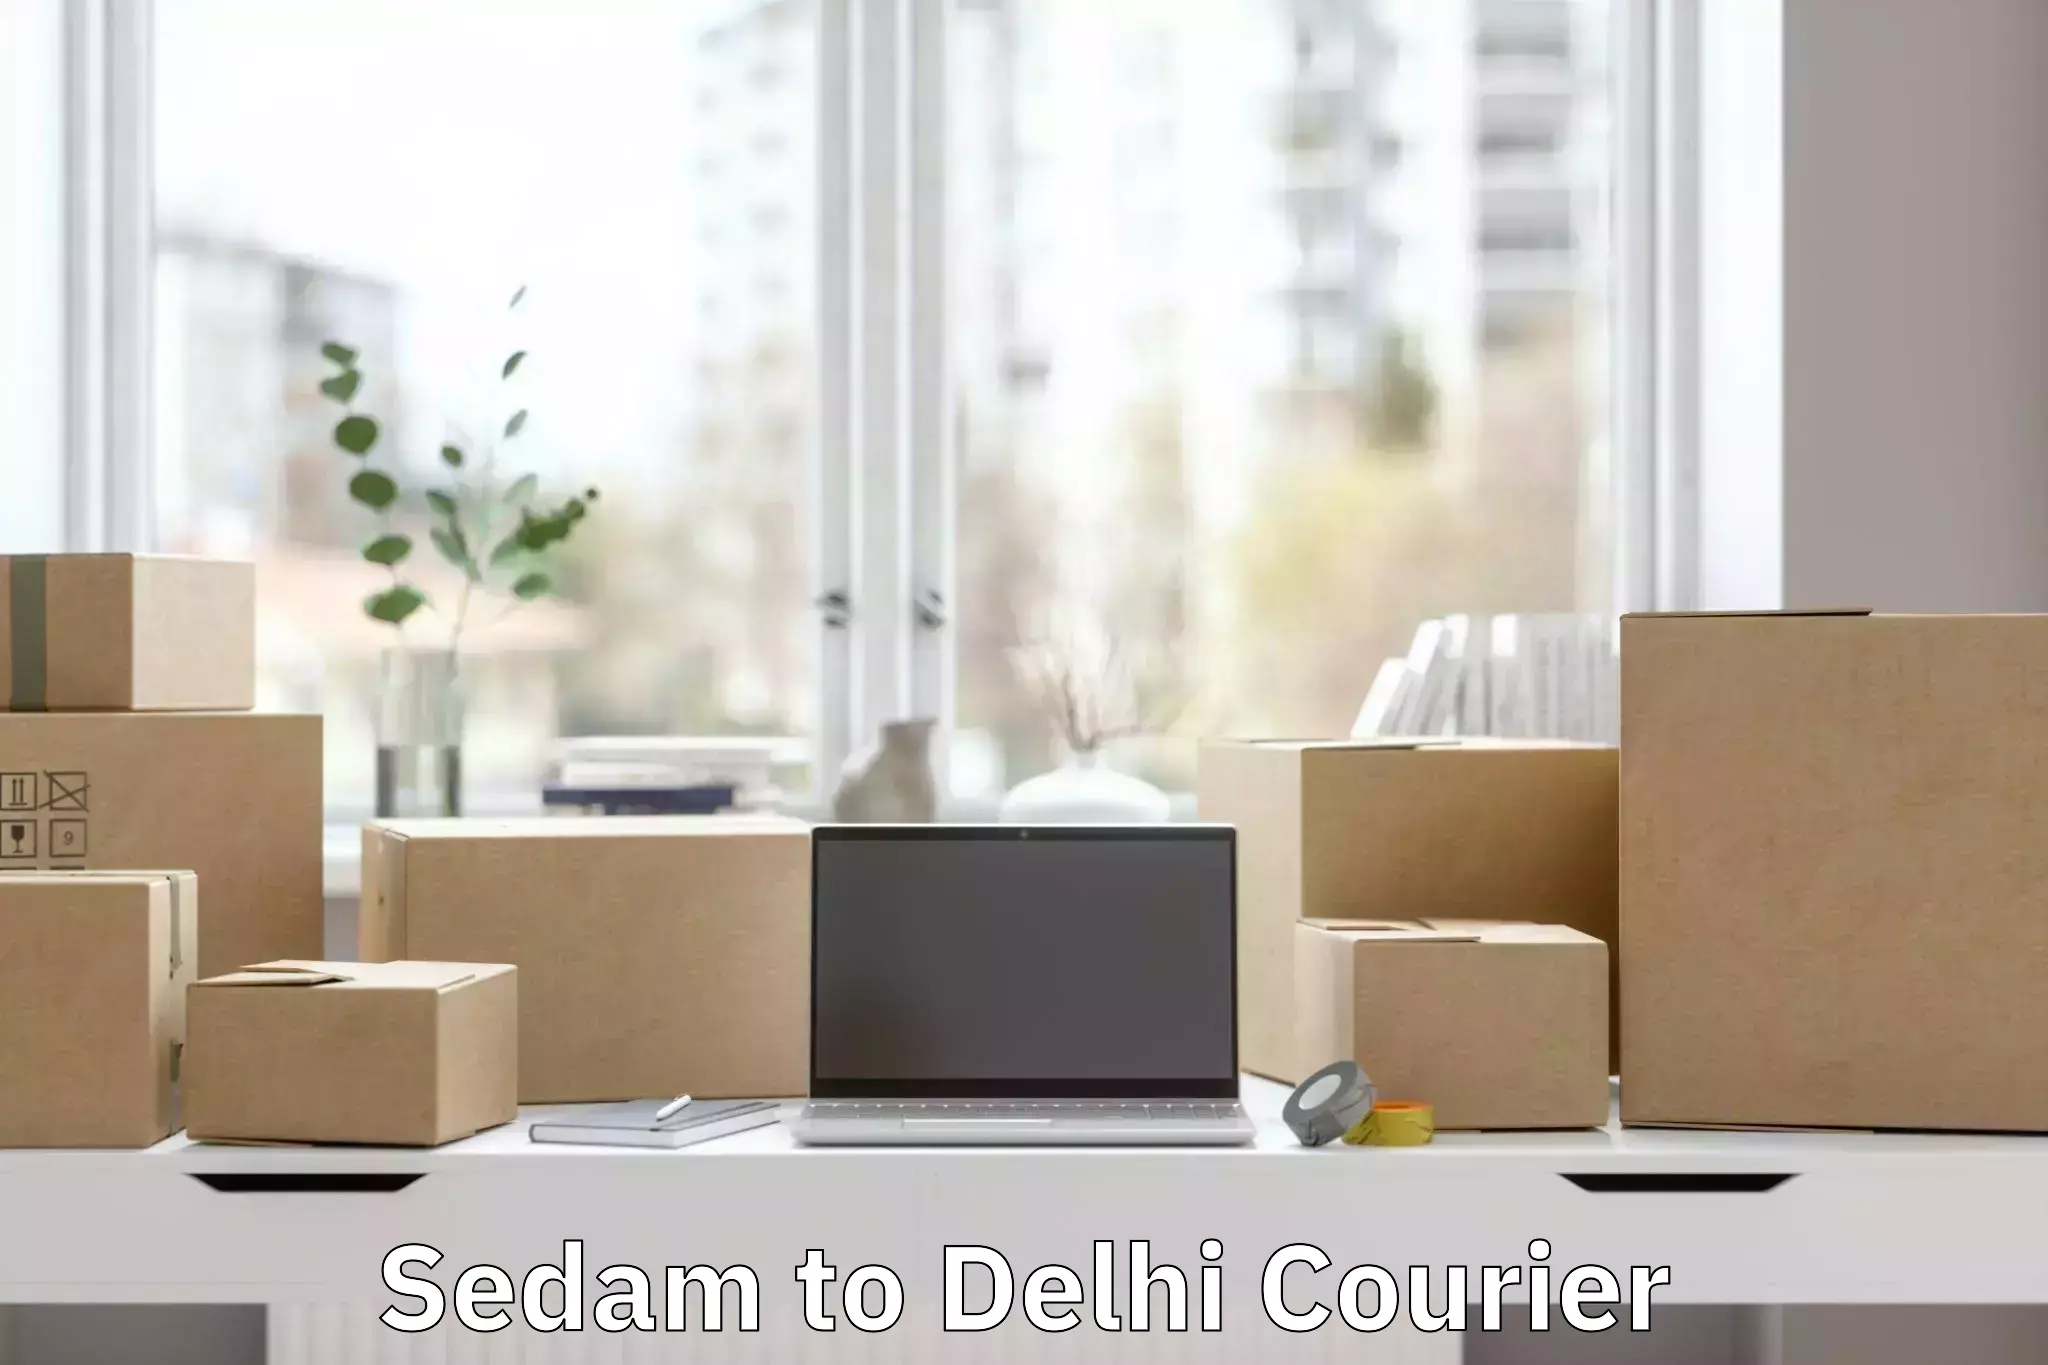 Door-to-door baggage service Sedam to Delhi